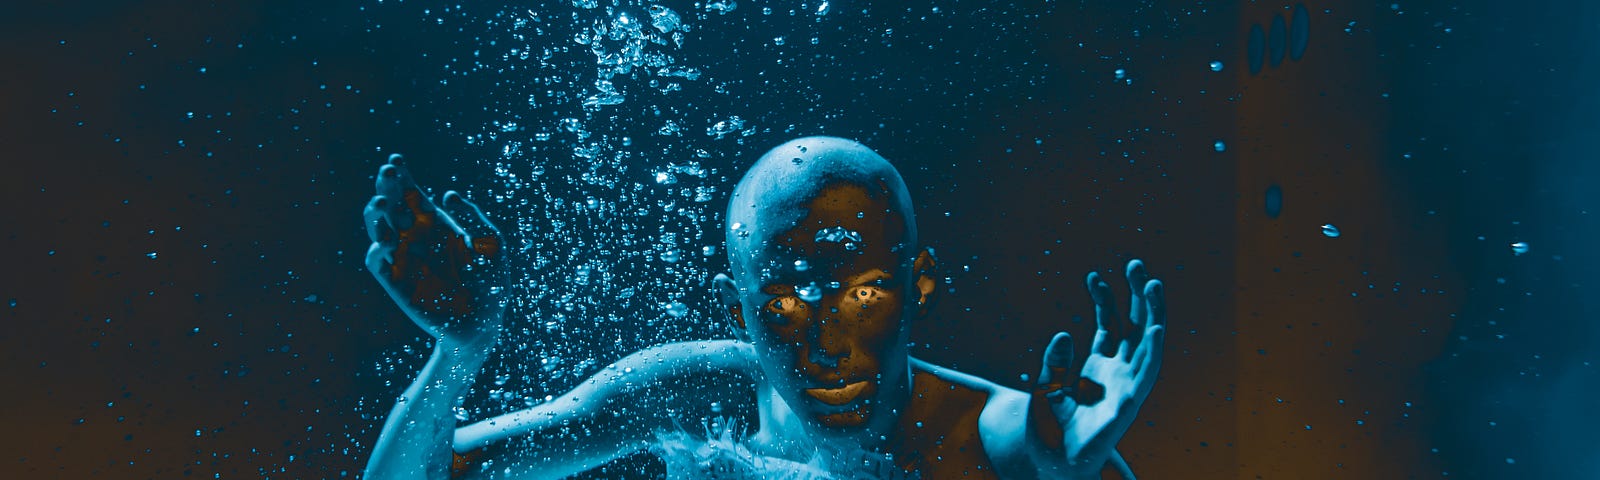 alien girl underwater